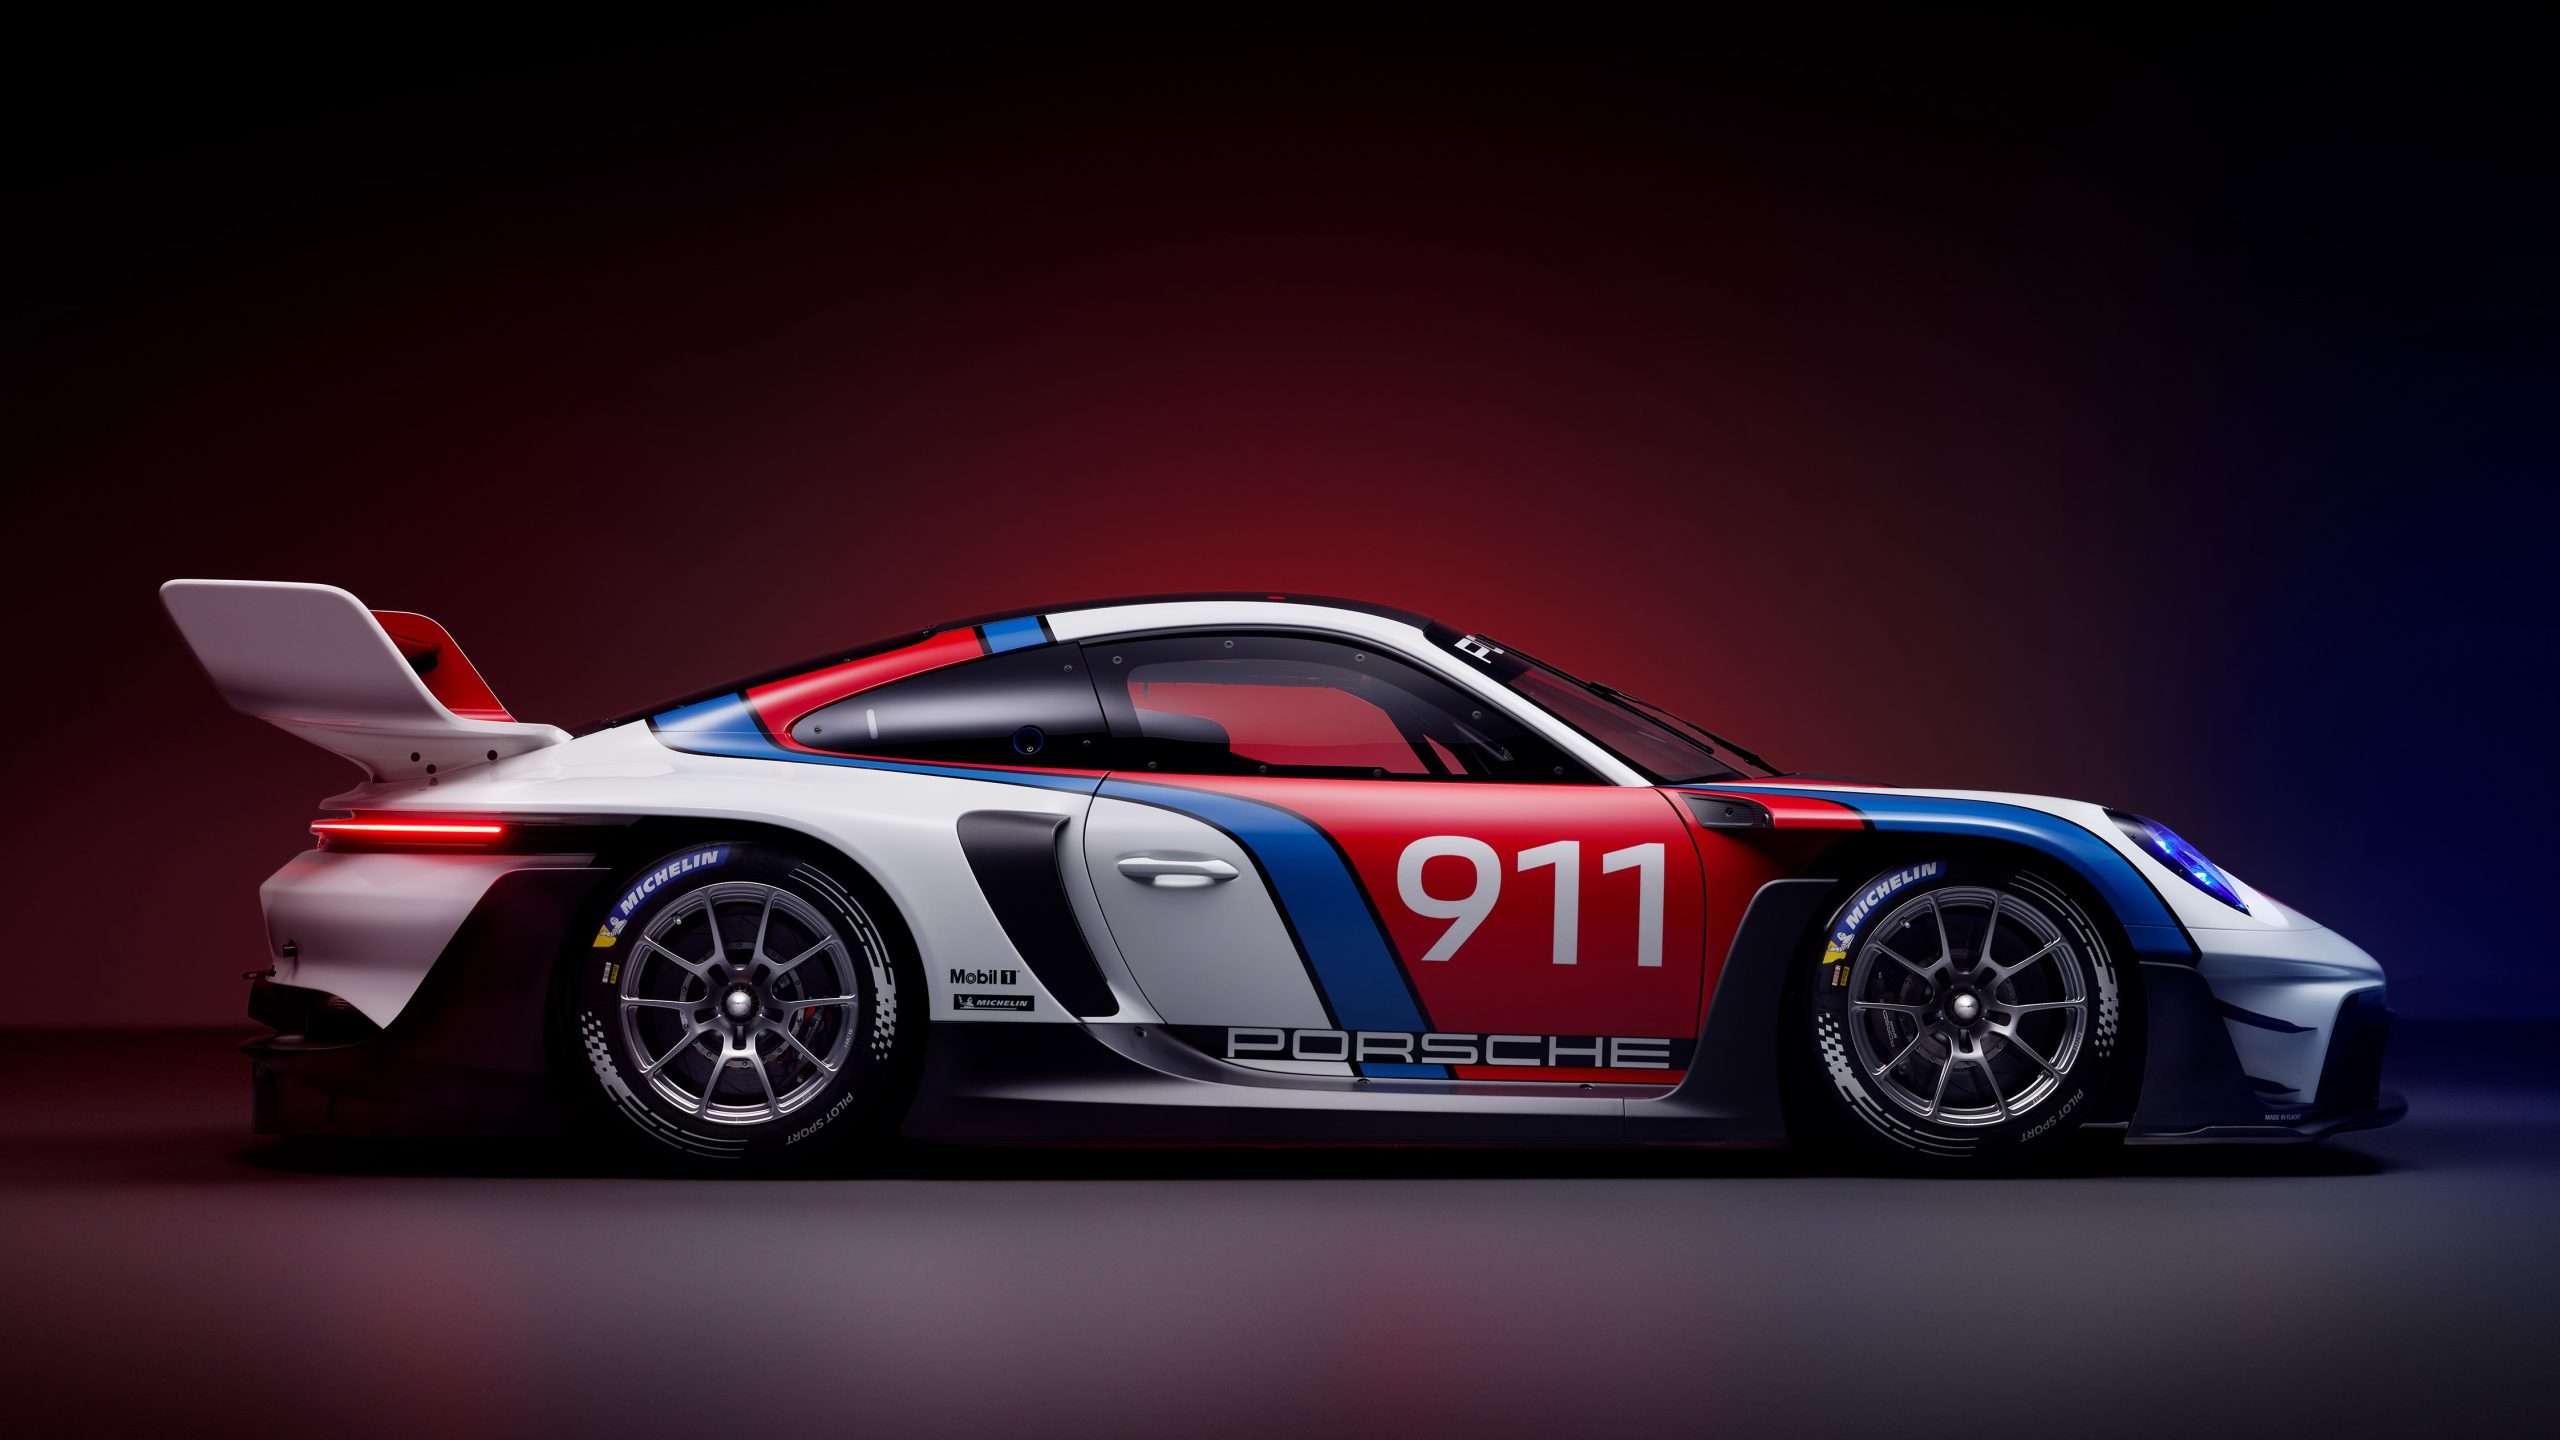 911 GT3 R rennsport